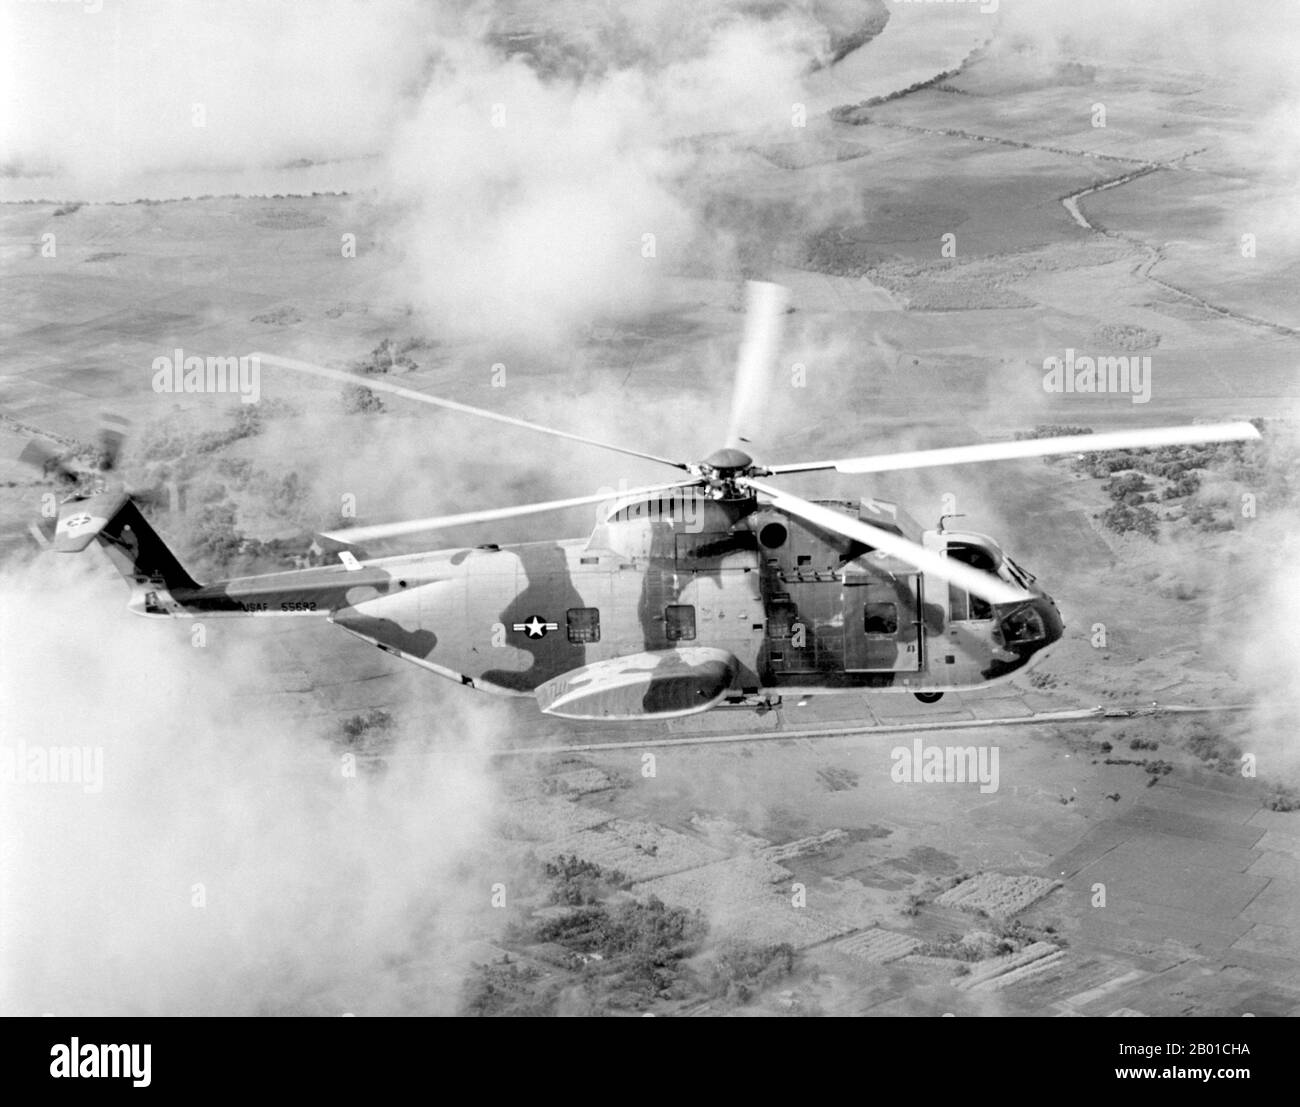 Vietnam: Stati Uniti Air Force Sikorsky CH-3C Jolly Green Giant elicottero del 3rd Aerospace Rescue and Recovery Squadron in Vietnam, 1967. La seconda guerra indochina, conosciuta in America come la guerra del Vietnam, fu un conflitto militare dell'epoca della guerra fredda che si verificò in Vietnam, Laos e Cambogia dal 1 novembre 1955 alla caduta di Saigon il 30 aprile 1975. Questa guerra seguì la prima Guerra d'Indocina e fu combattuta tra il Vietnam del Nord, sostenuto dai suoi alleati comunisti, e il governo del Vietnam del Sud, sostenuto dagli Stati Uniti e da altre nazioni anticomuniste. Foto Stock